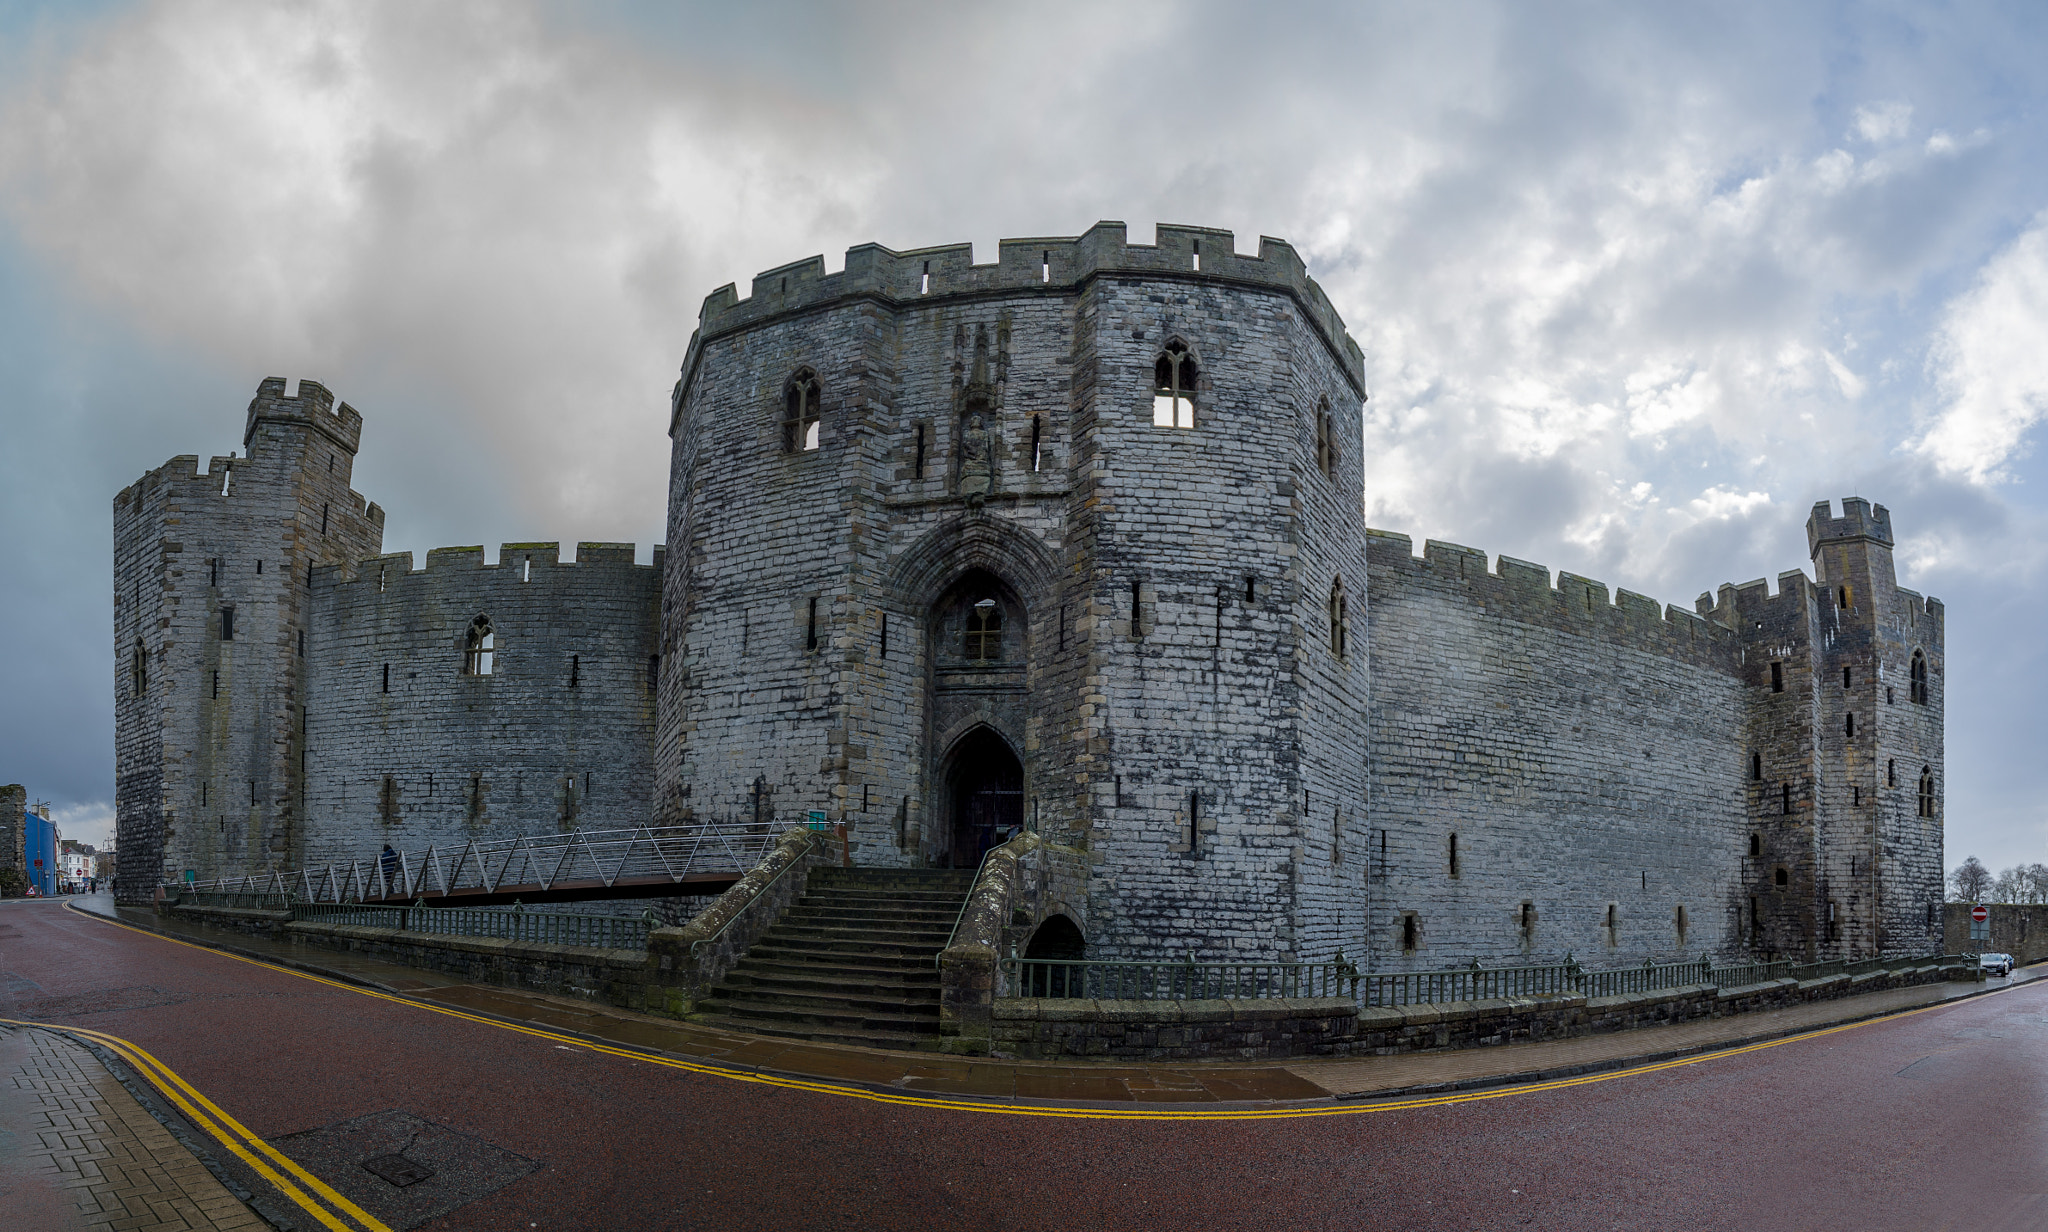 Sony a7S sample photo. Caernarfon castle photography